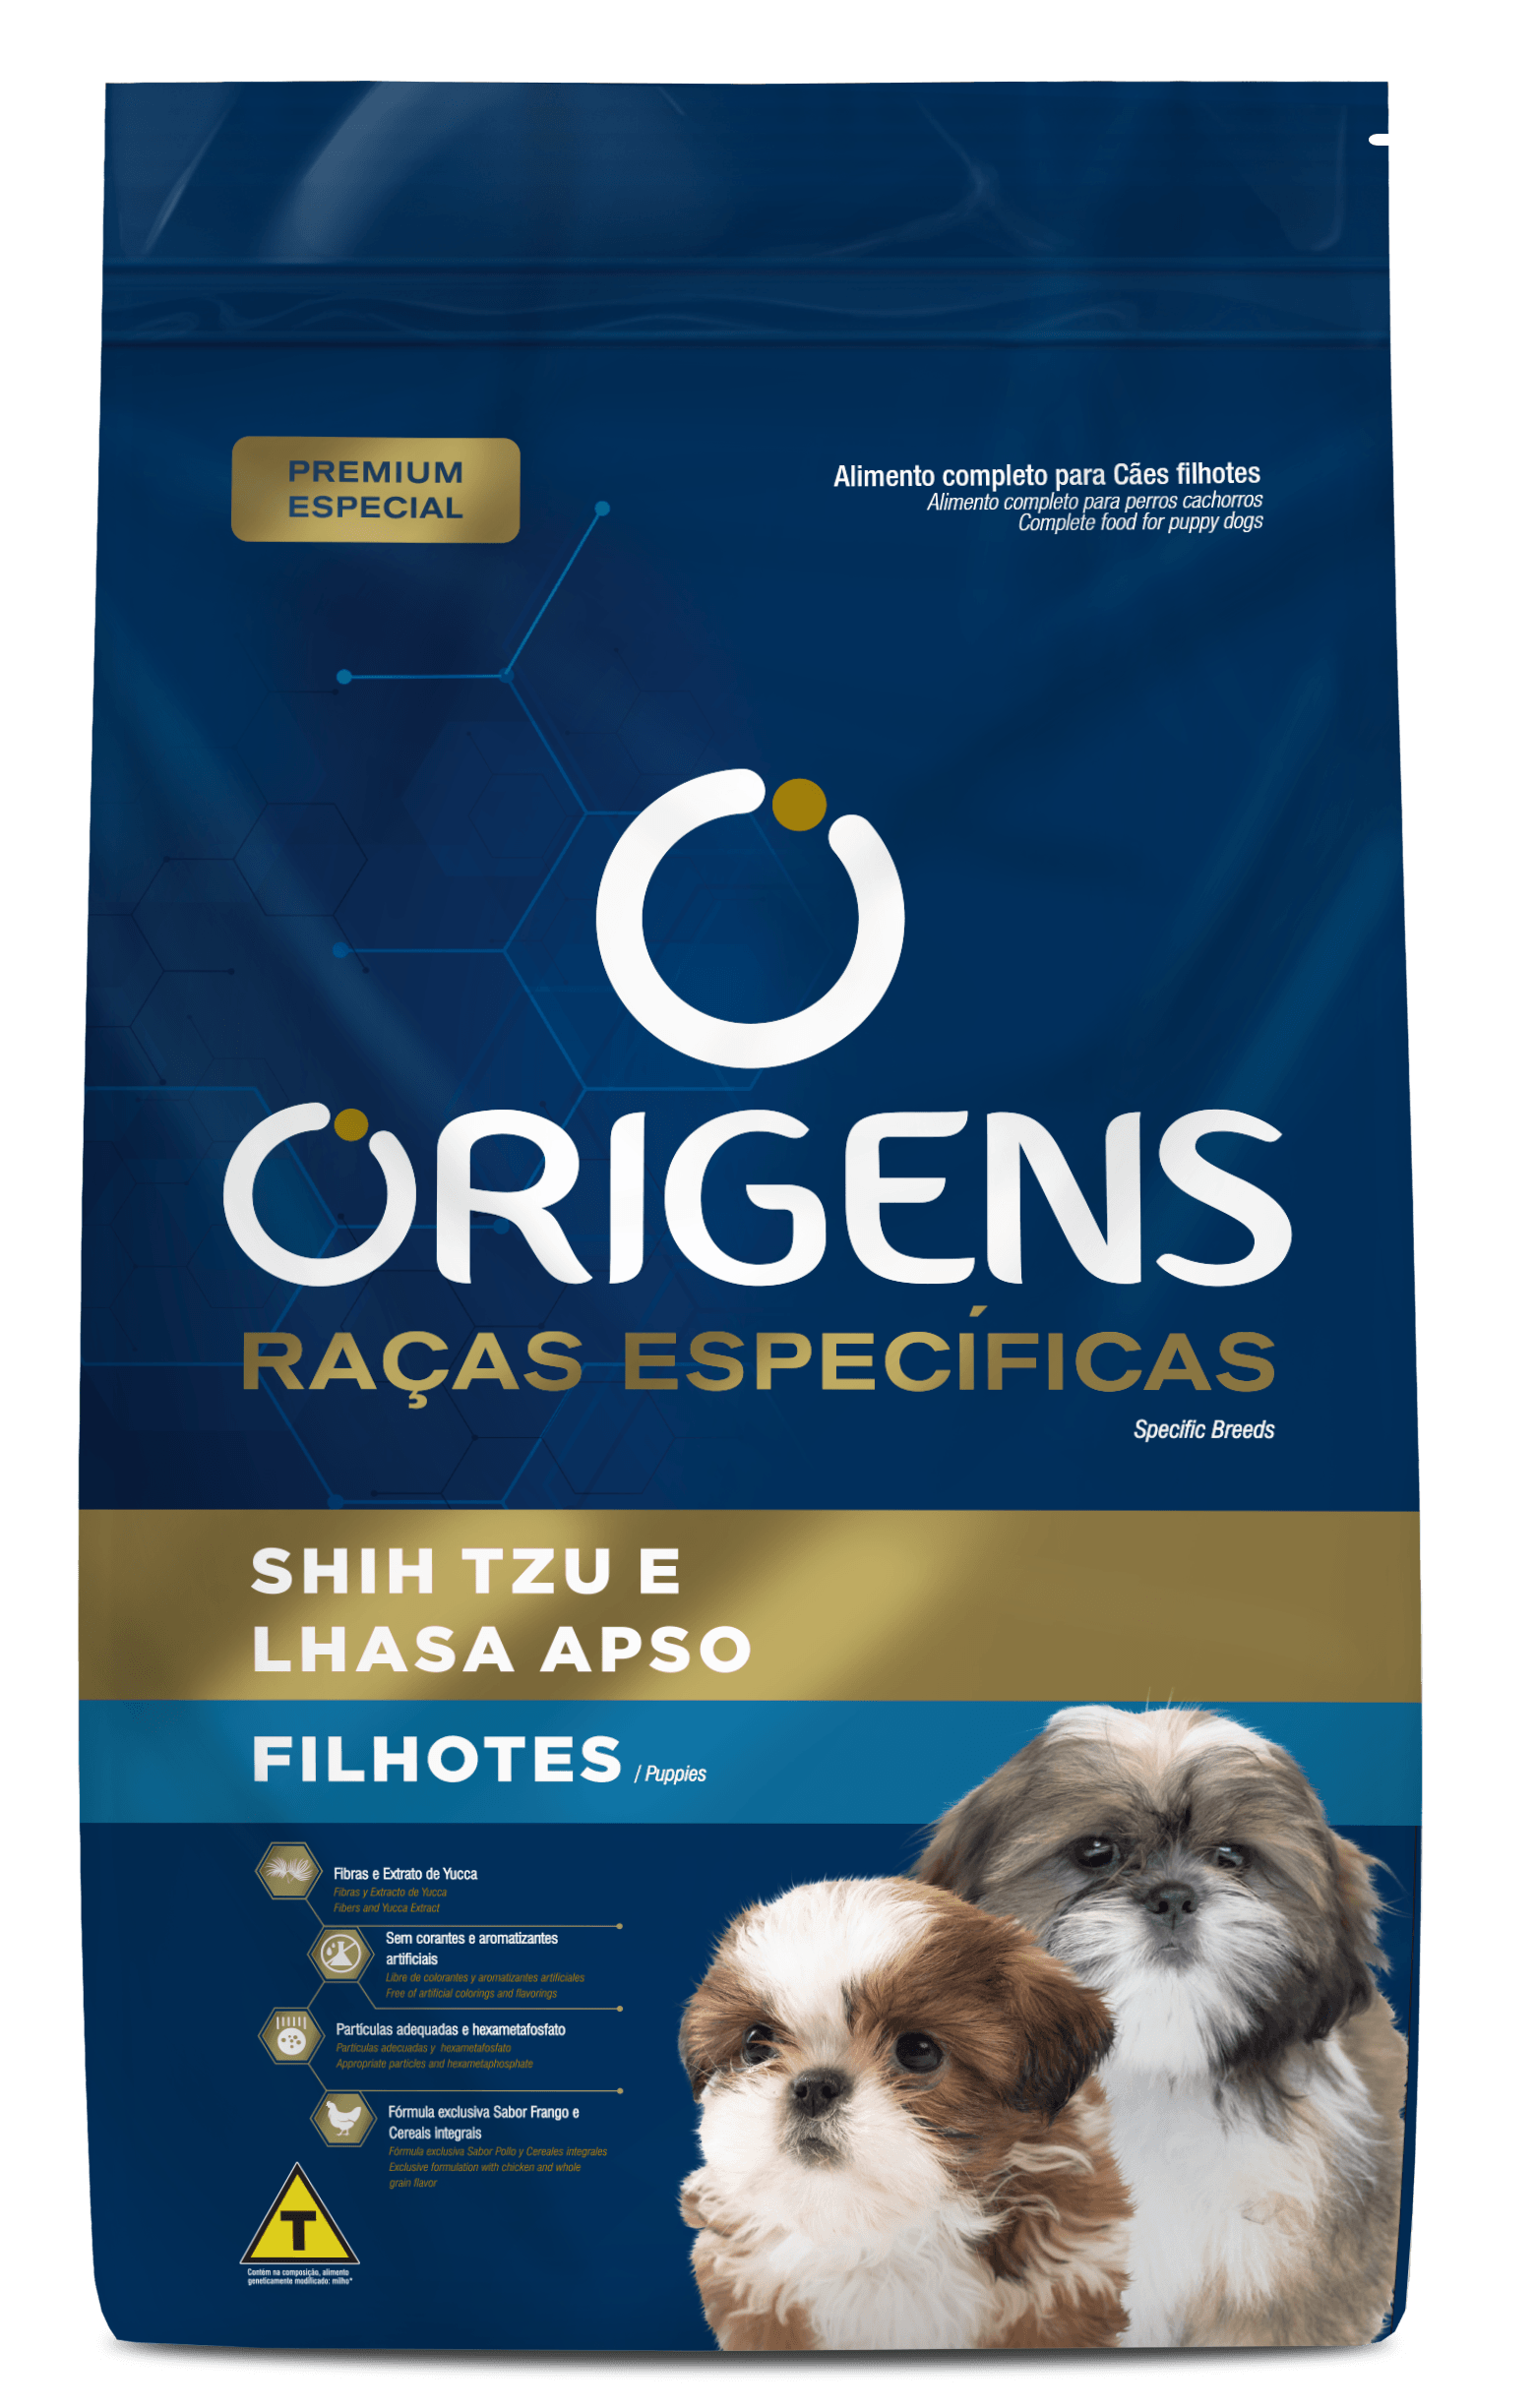 Origens Premium Especial Specific Breeds Puppies Shih Tzu and Lhasa Apso